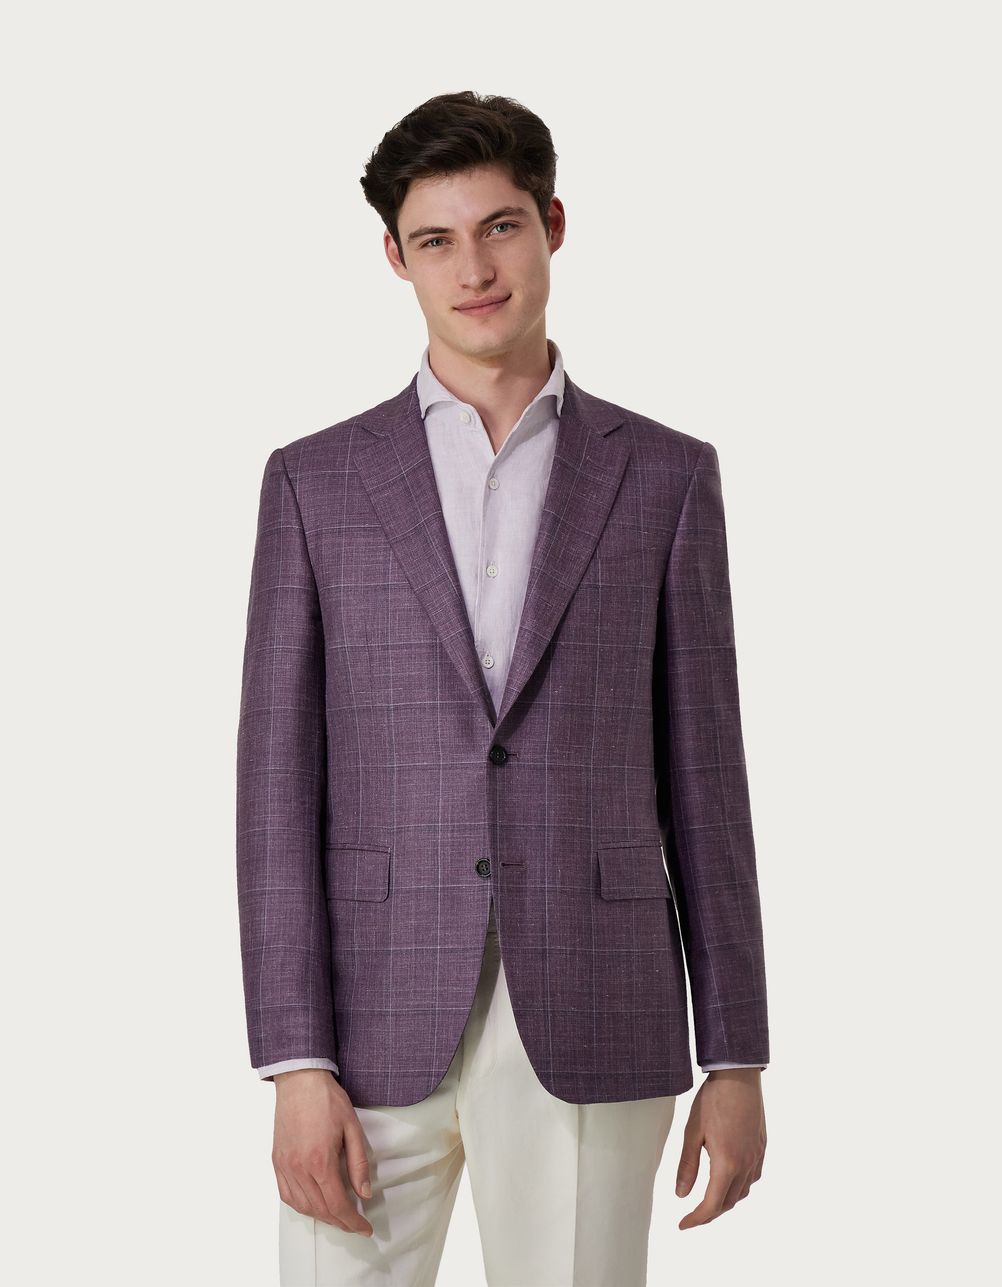 Purple overcheck blazer in wool, silk and linen